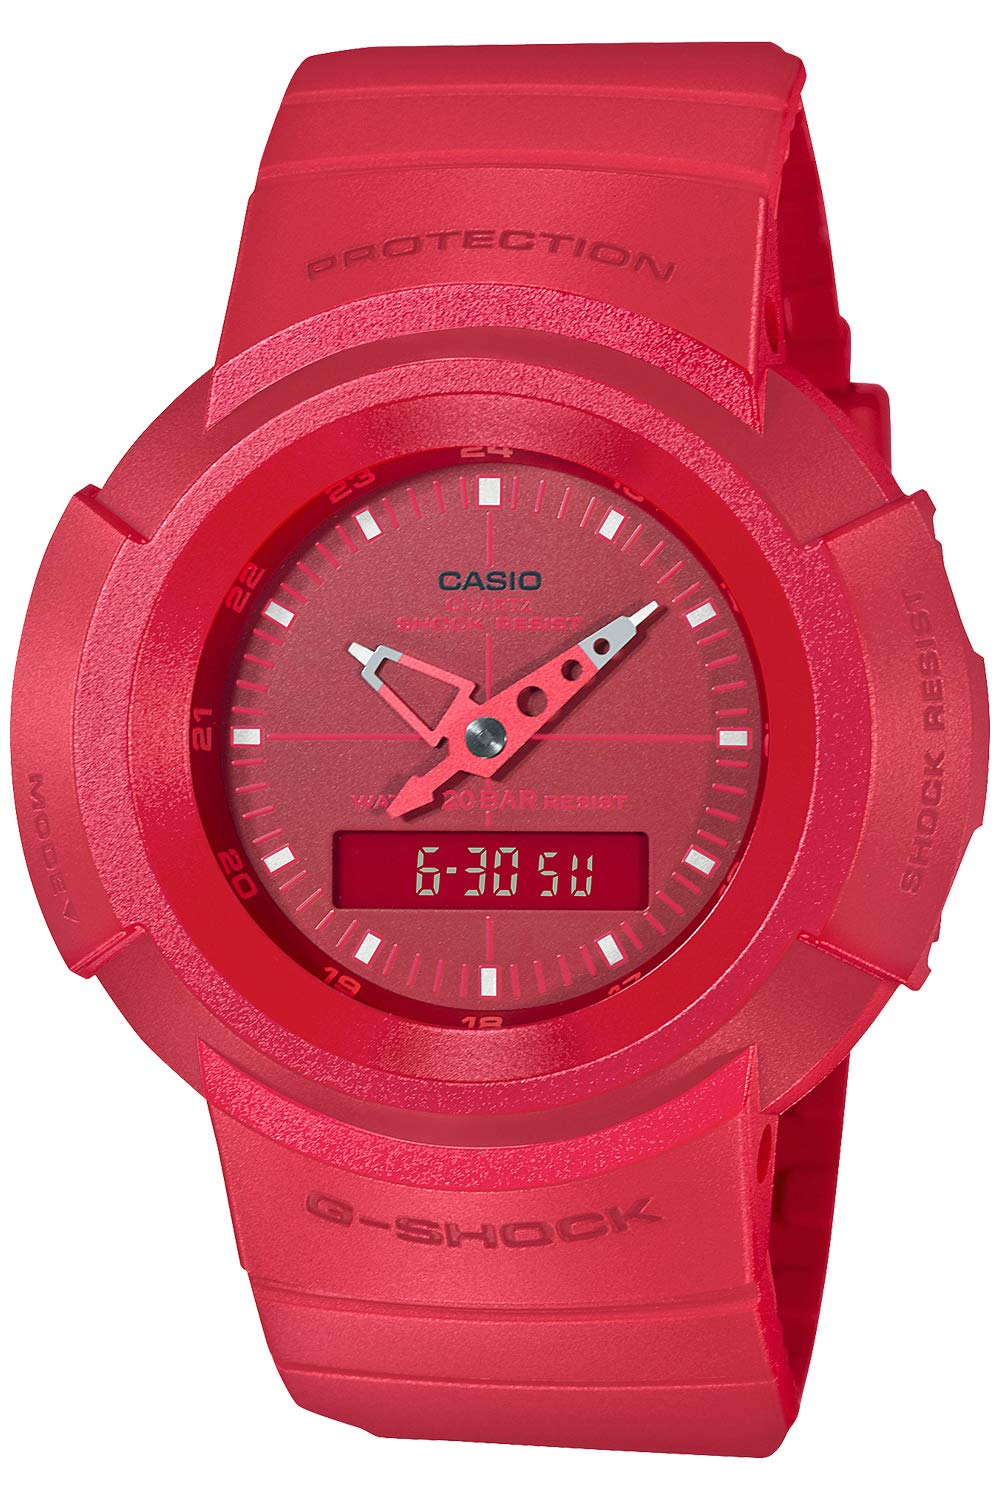 Casio AW-500 Series Wristwatch